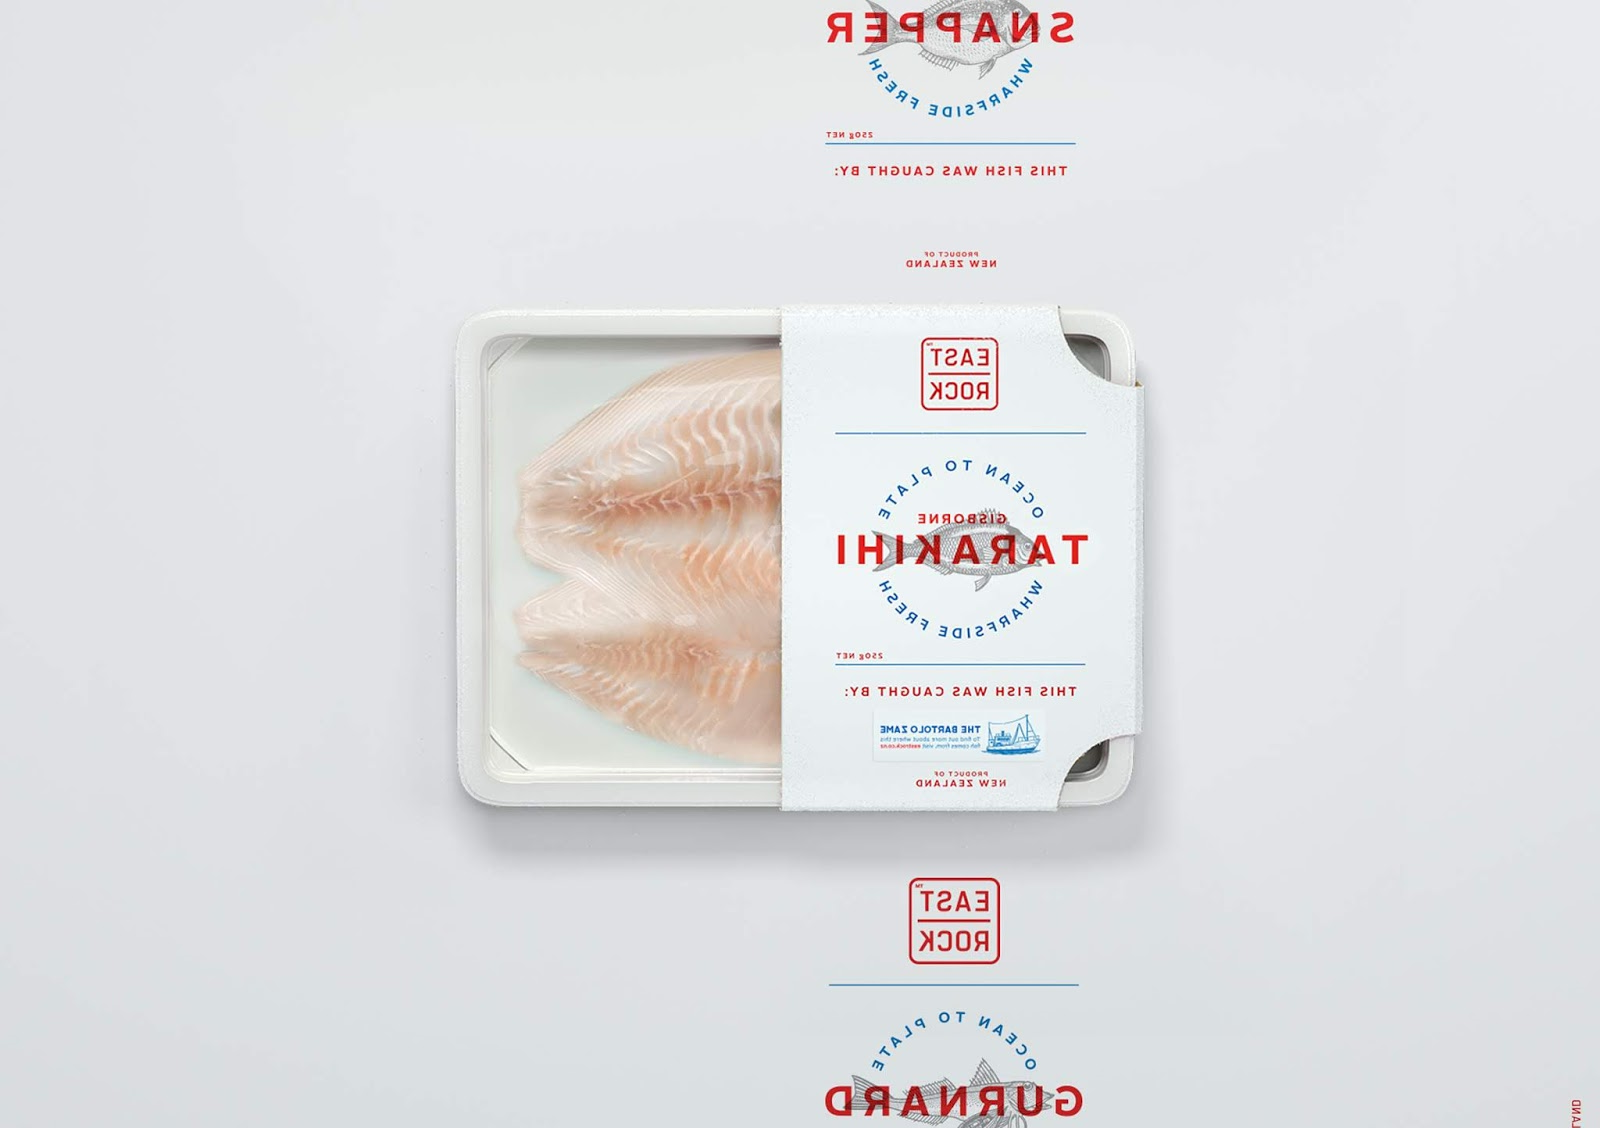 海鱼包装设计西安欧亿体育‧（官方）平台网站
品牌包装设计